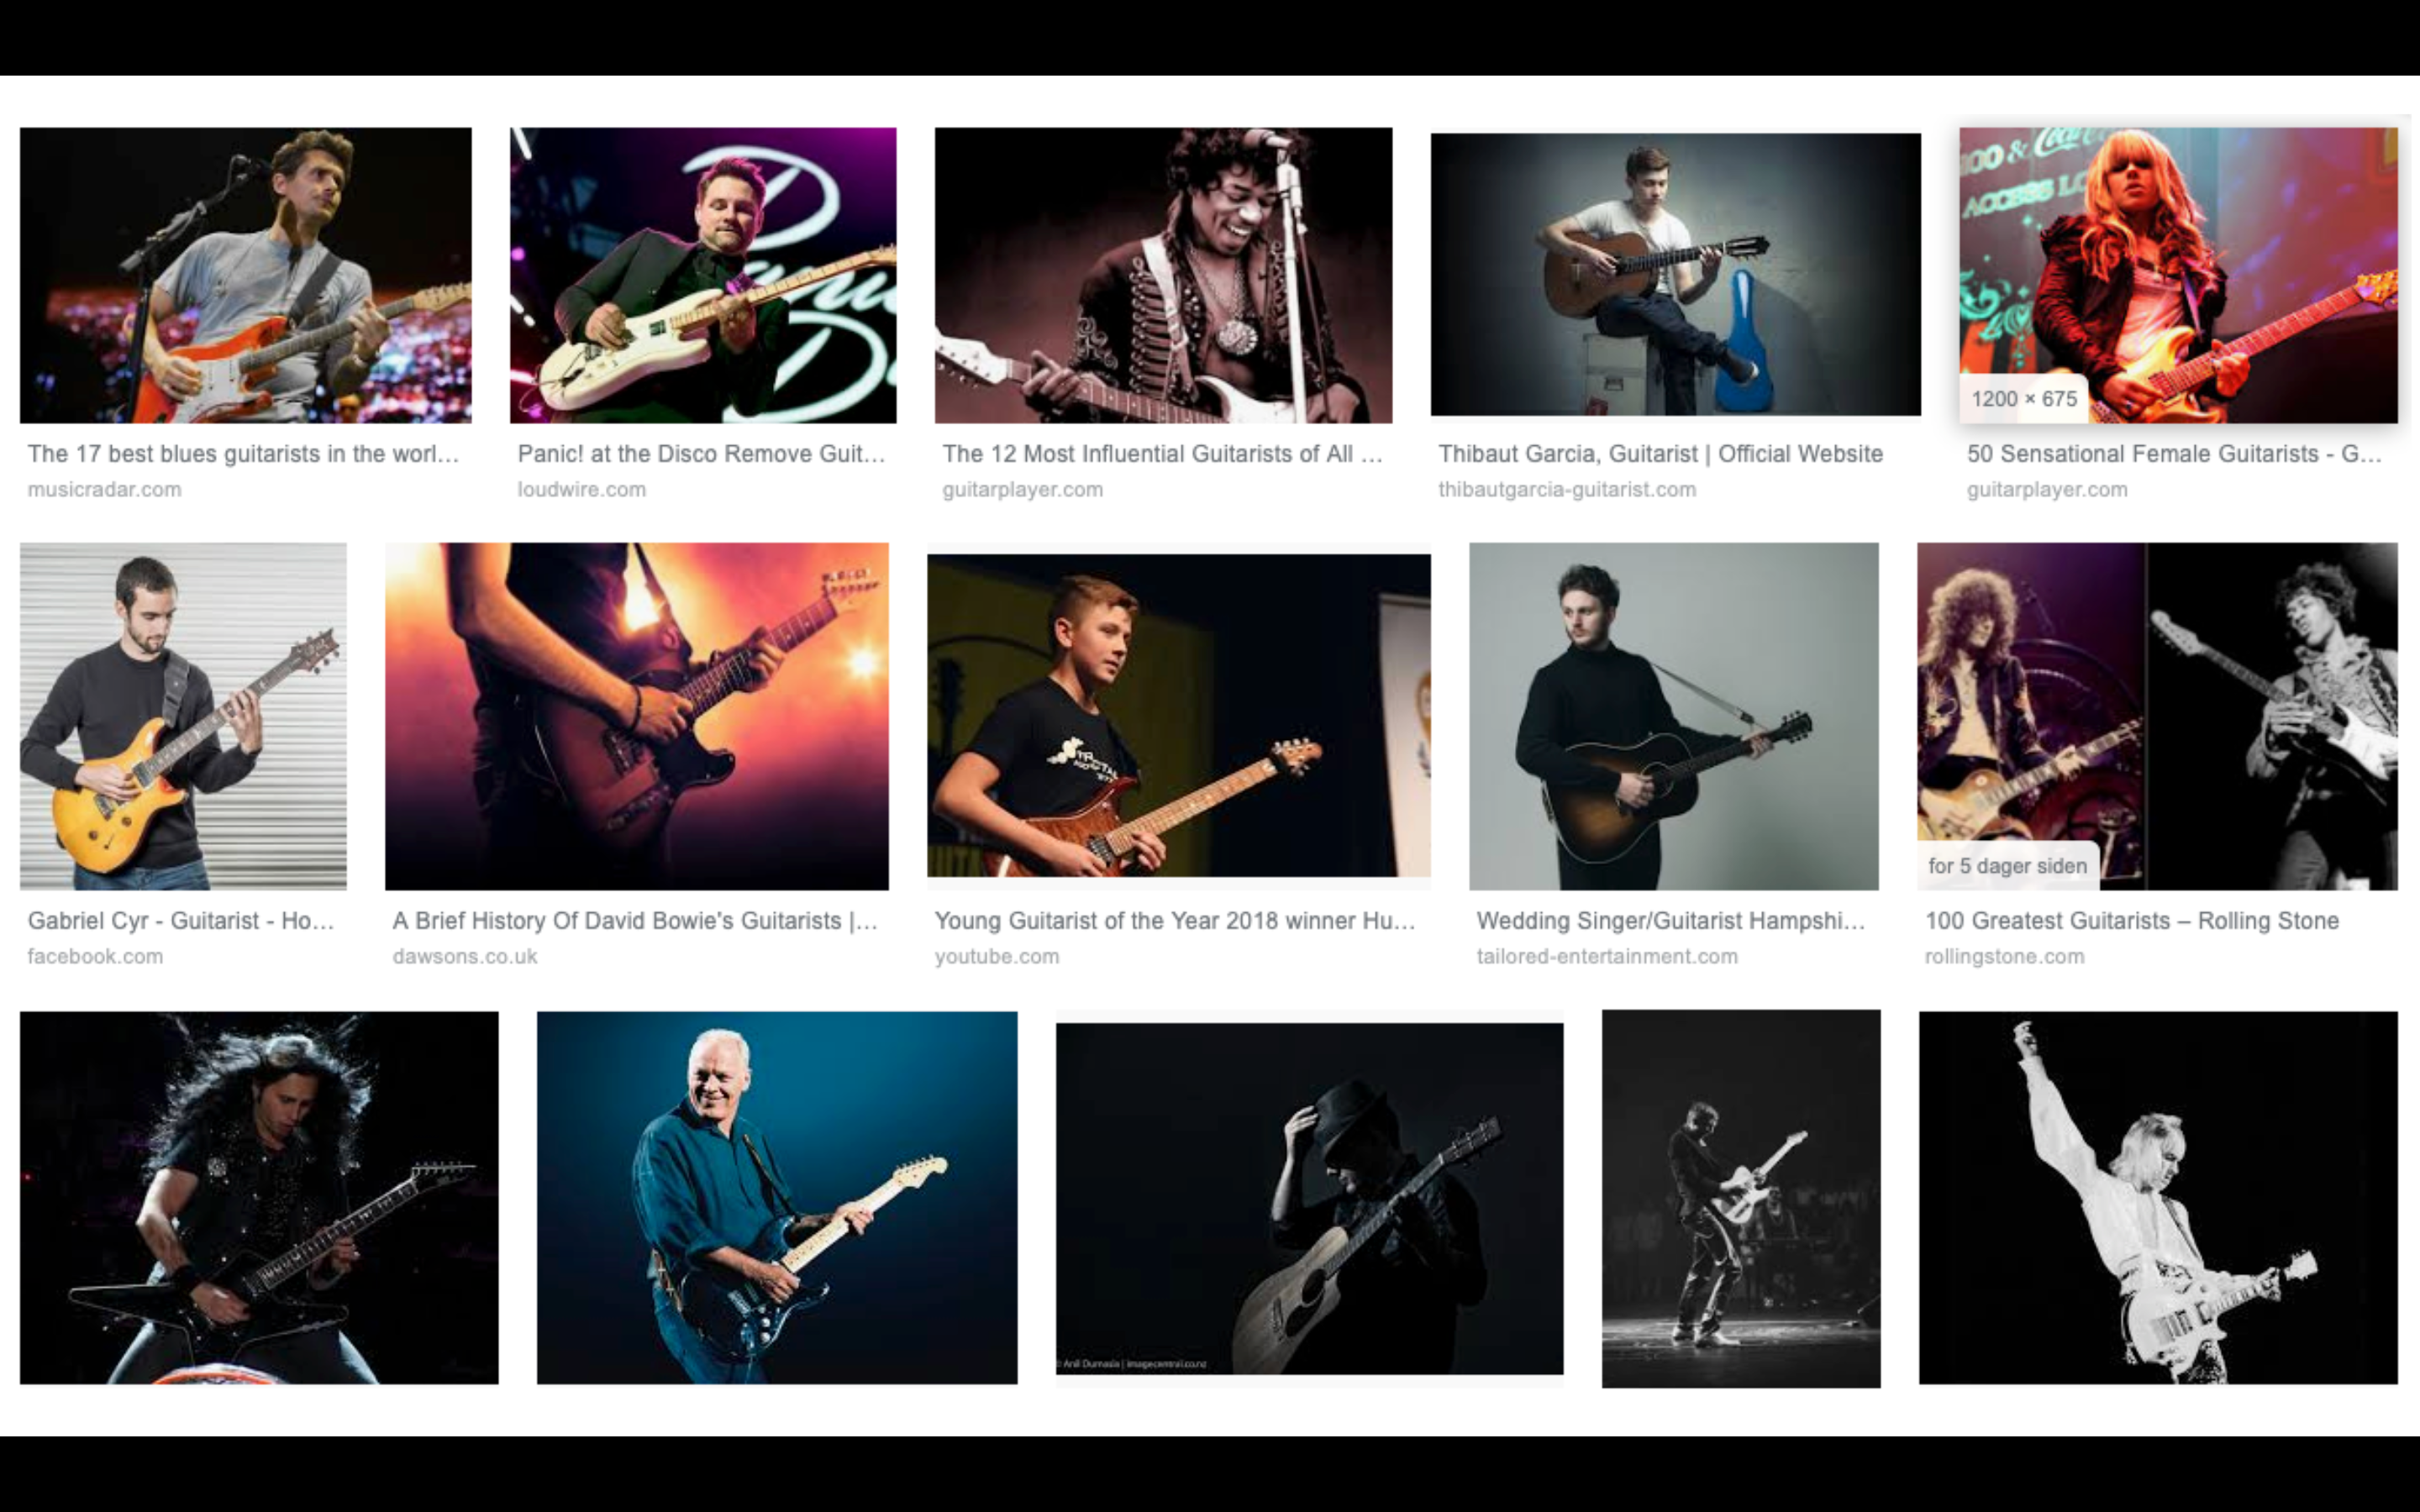 Bildesøk for "guitarist" viser 15 bilder. Ett bilde er av en kvinne, resten er menn. Under bildet av kvinnen står det "female guitarist", det andre er bare "gitarist". To at bildene viser Jimi Hendix, og de resterende er hvite menn.